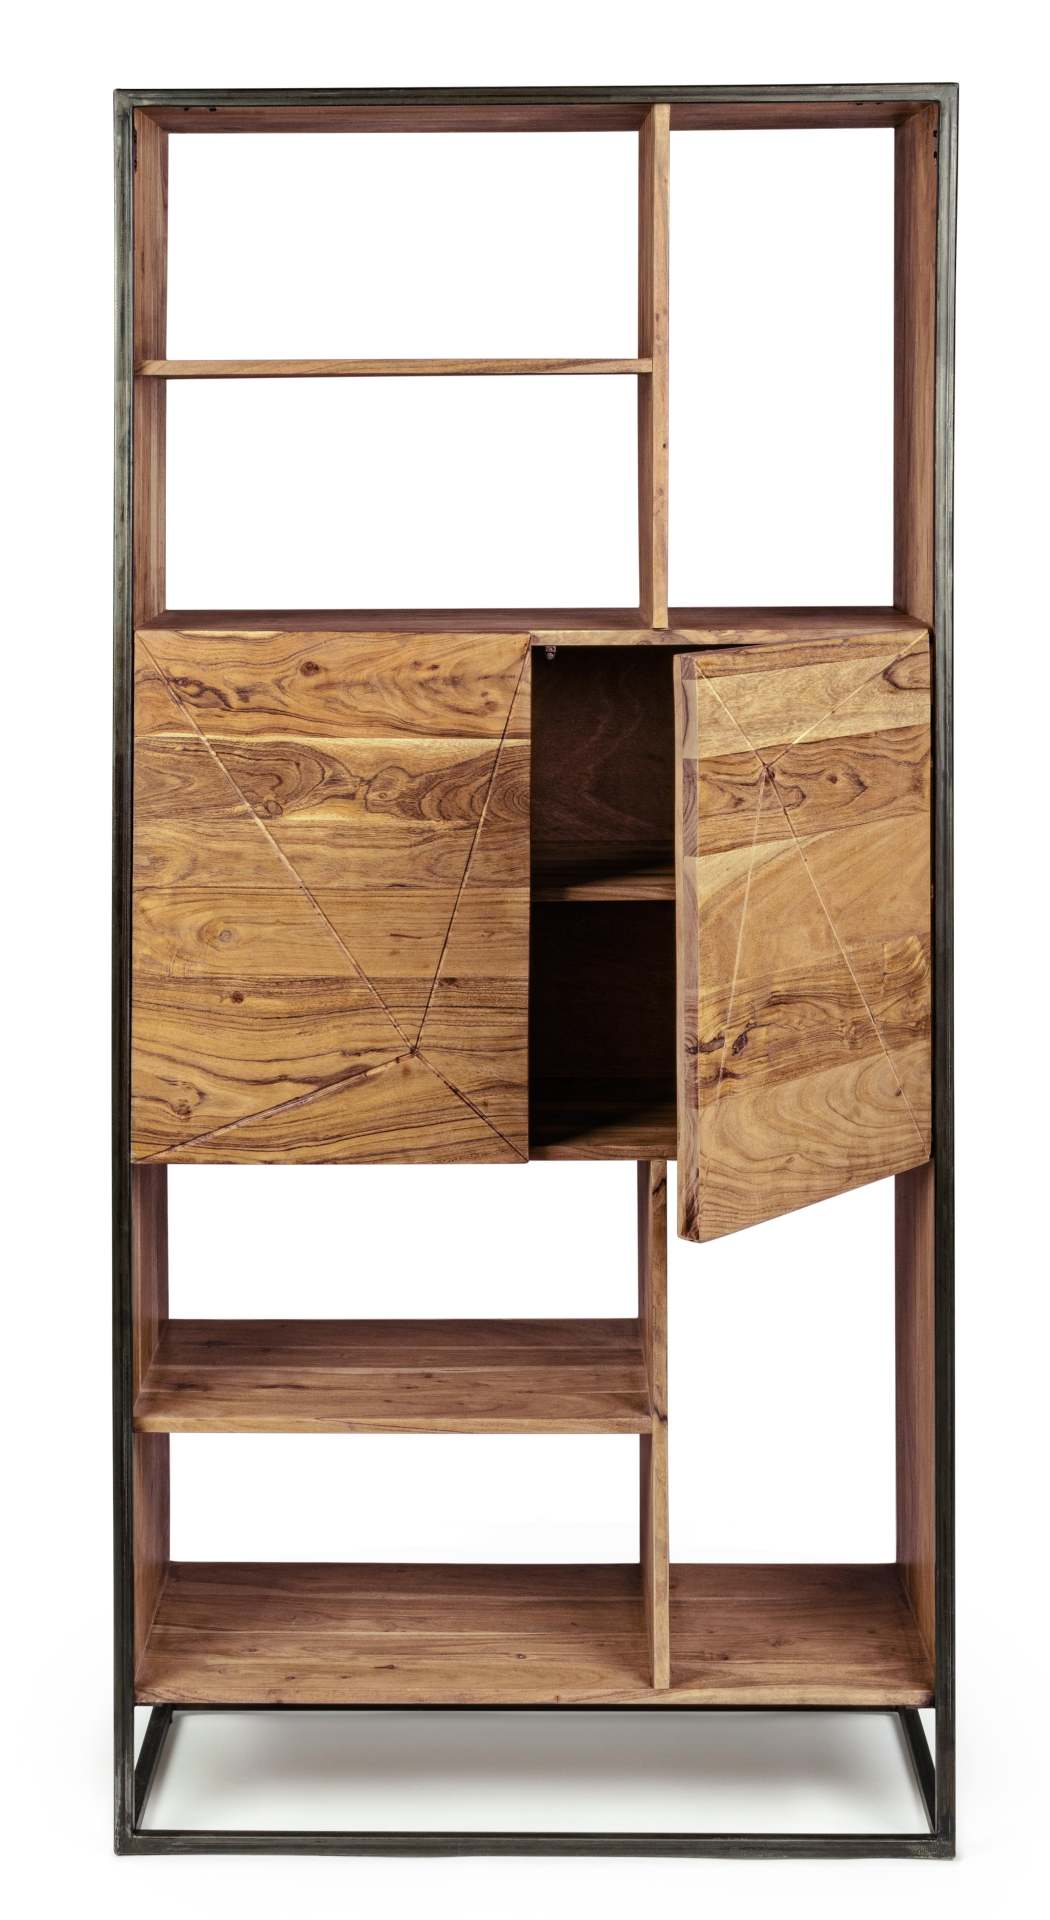 Das Bücherregal Egon überzeugt mit seinem klassischen Design. Gefertigt wurde es aus Akazienholz, welches einen natürlichen Farbton besitzt. Das Gestell ist aus Metall und hat eine schwarze Farbe. Das Bücherregal verfügt über zwei Türen und sechs Fächer. 